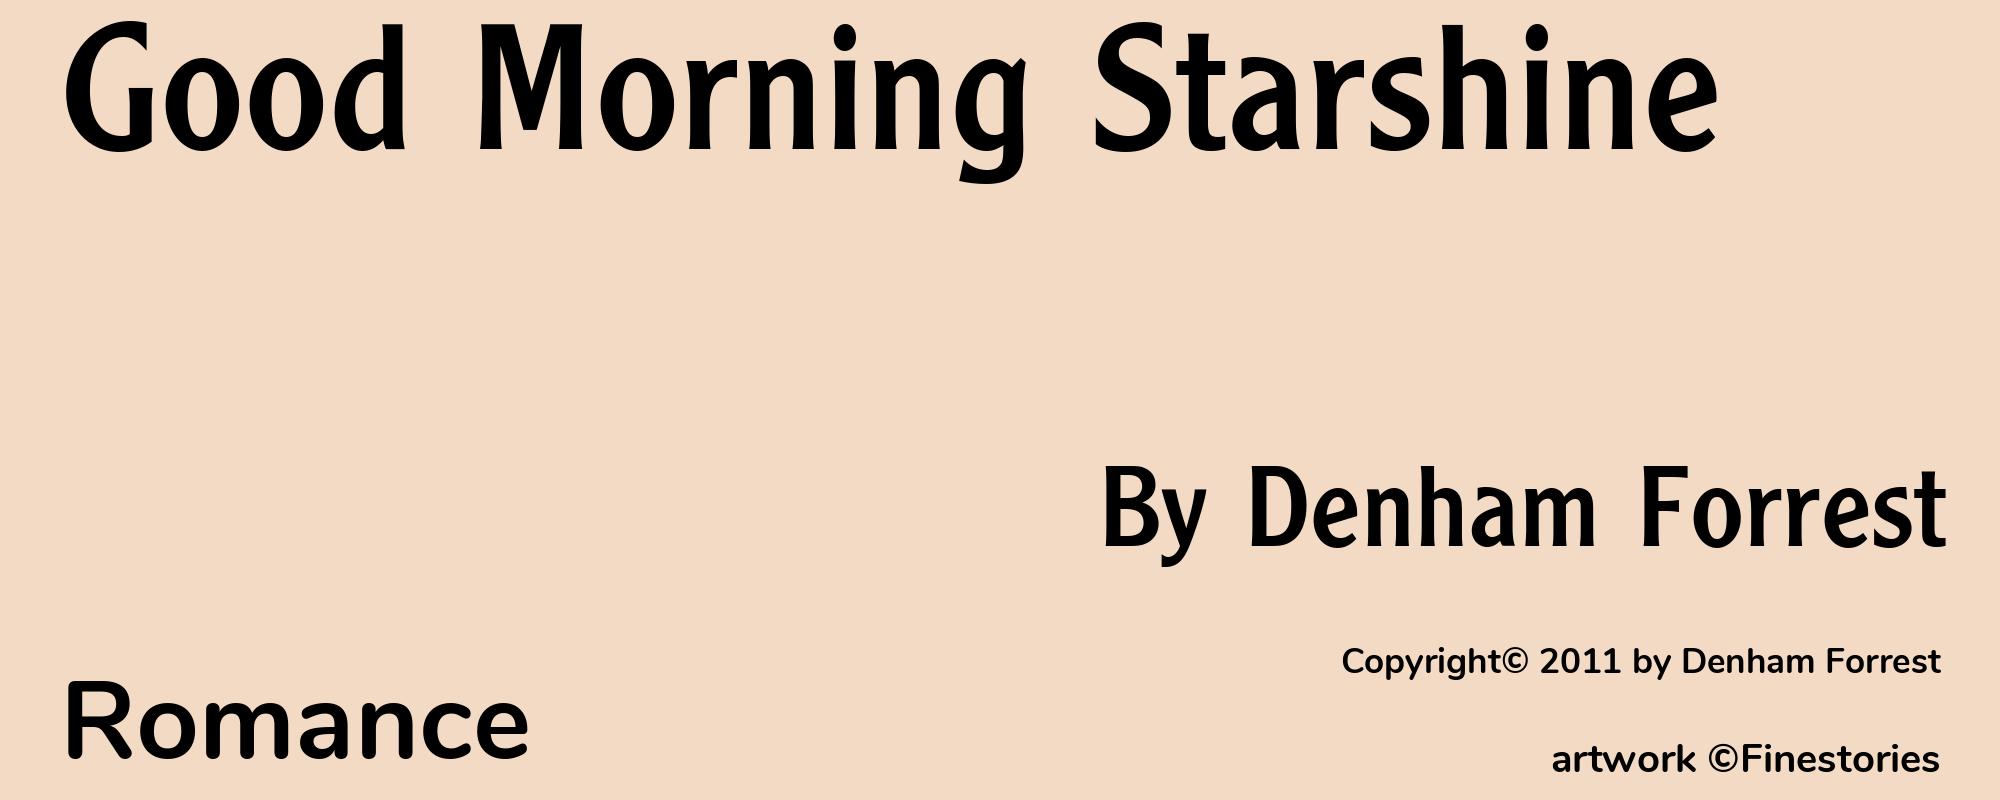 Good Morning Starshine - Cover